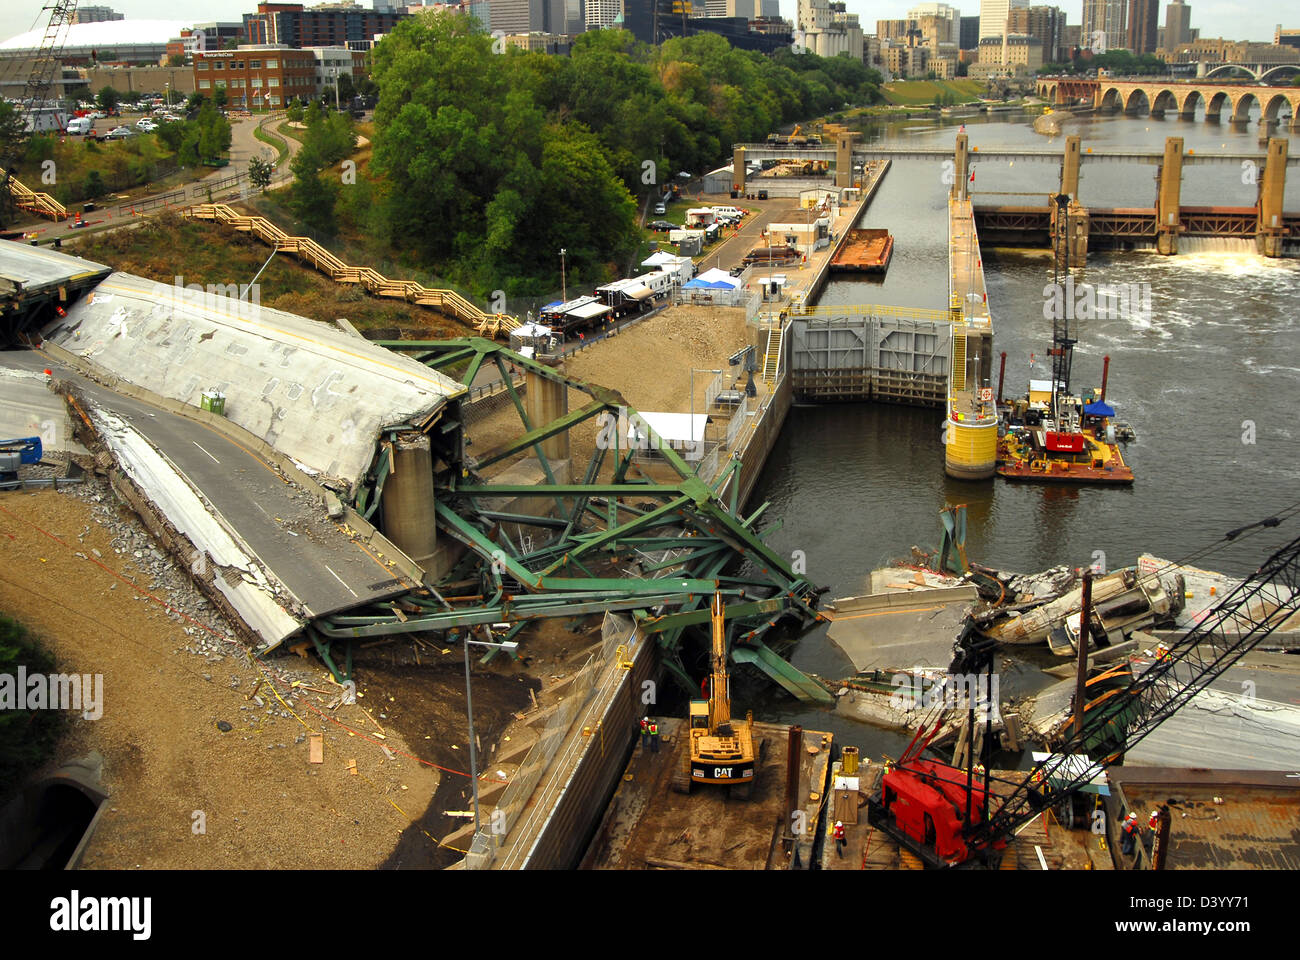 Vista de los restos de la I-35, el derrumbamiento del puente 8 de agosto de 2007 en Minneapolis, MN. El puente de repente colapsó durante horas punta de la tarde el 1 de agosto de 2007, matando a 13 personas e hiriendo a 145. Foto de stock